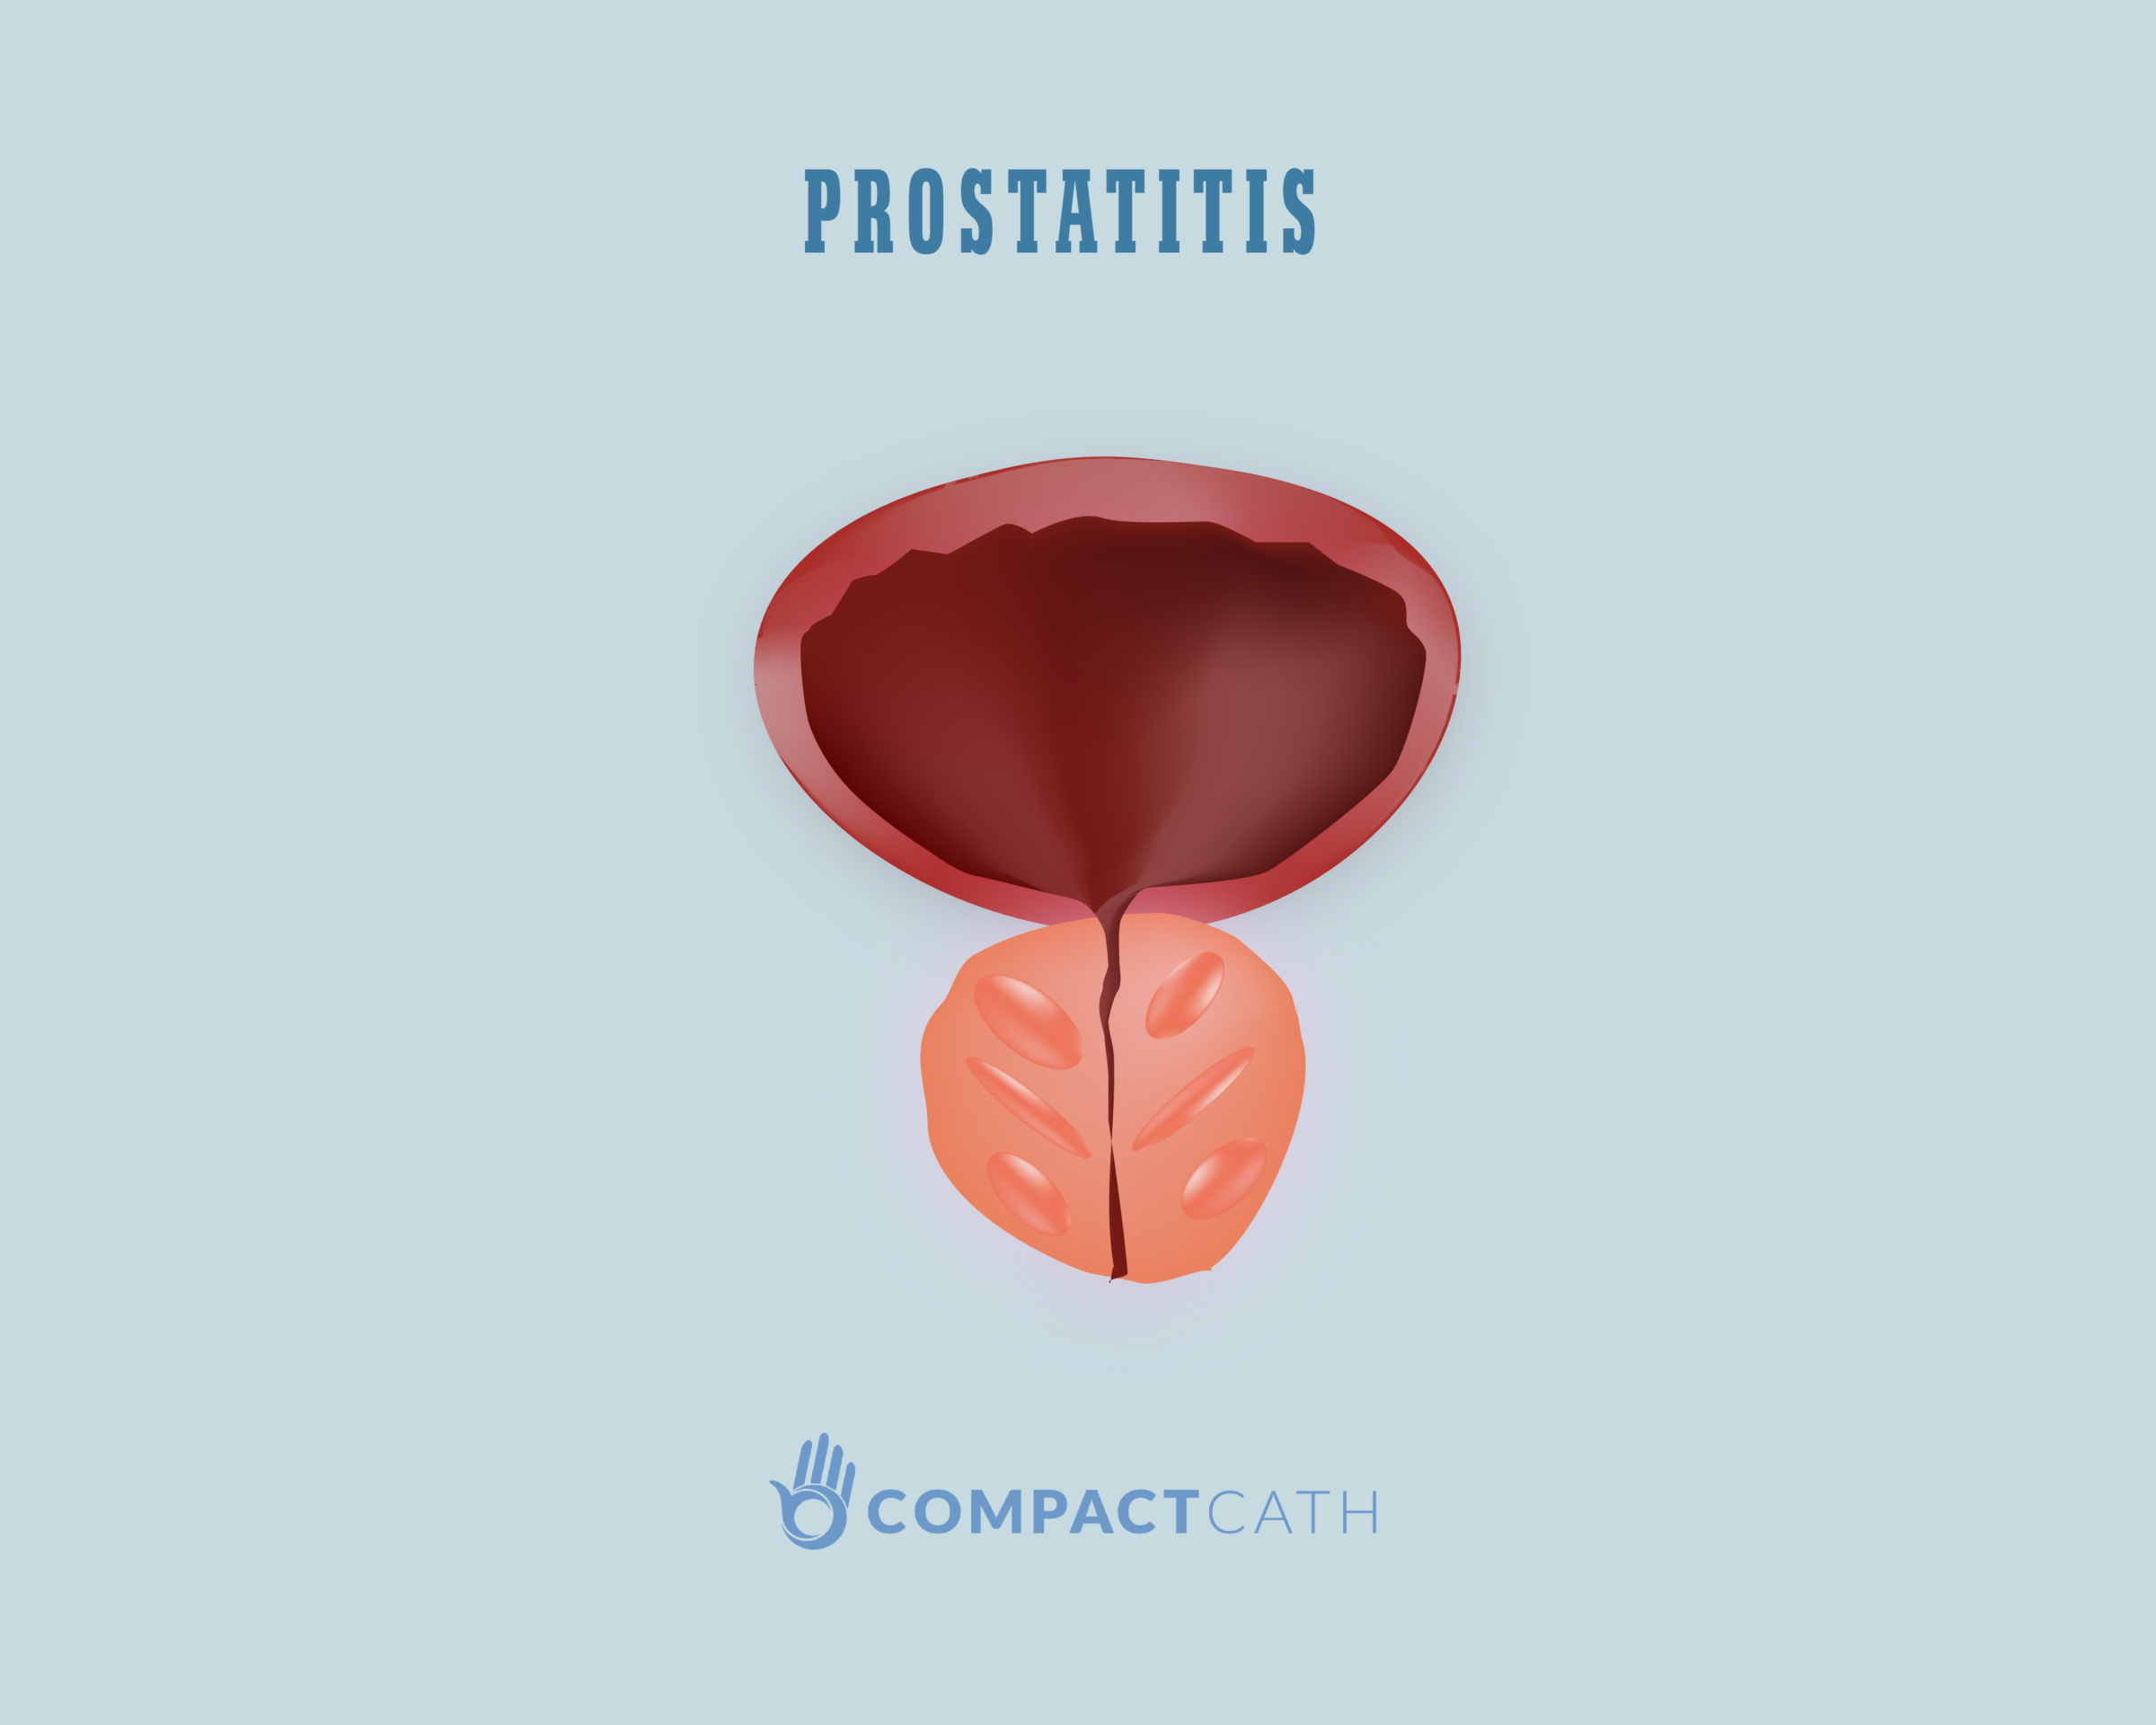 Mit jelent a prosztatitis a férfiakban